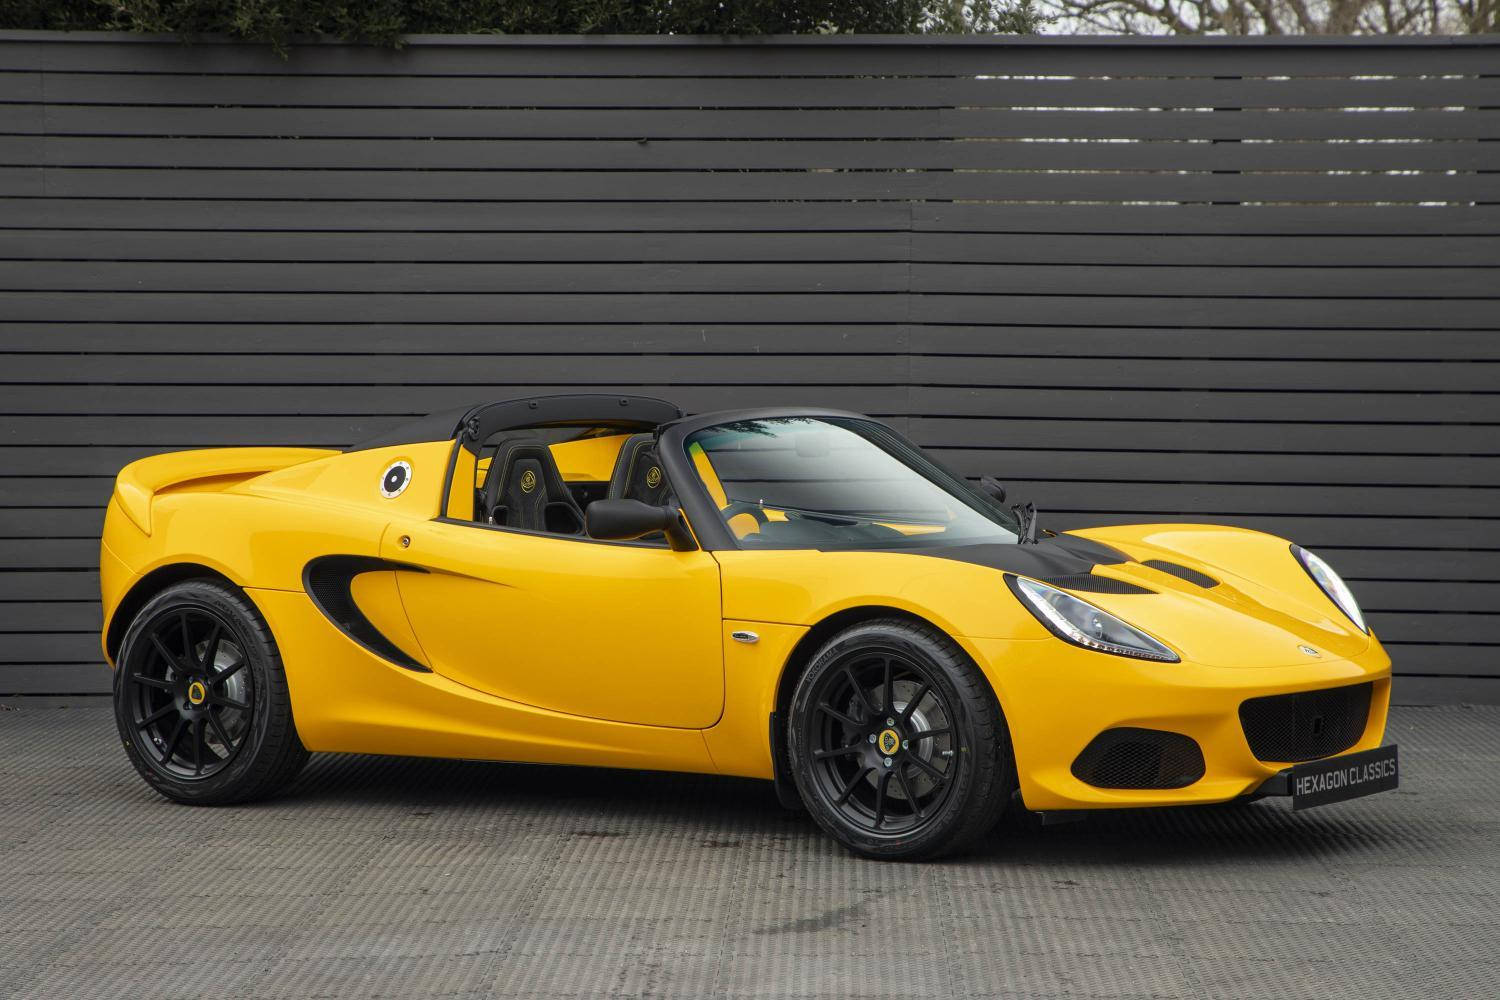 Stunning Yellow Lotus Sports Car in Garage Wallpaper